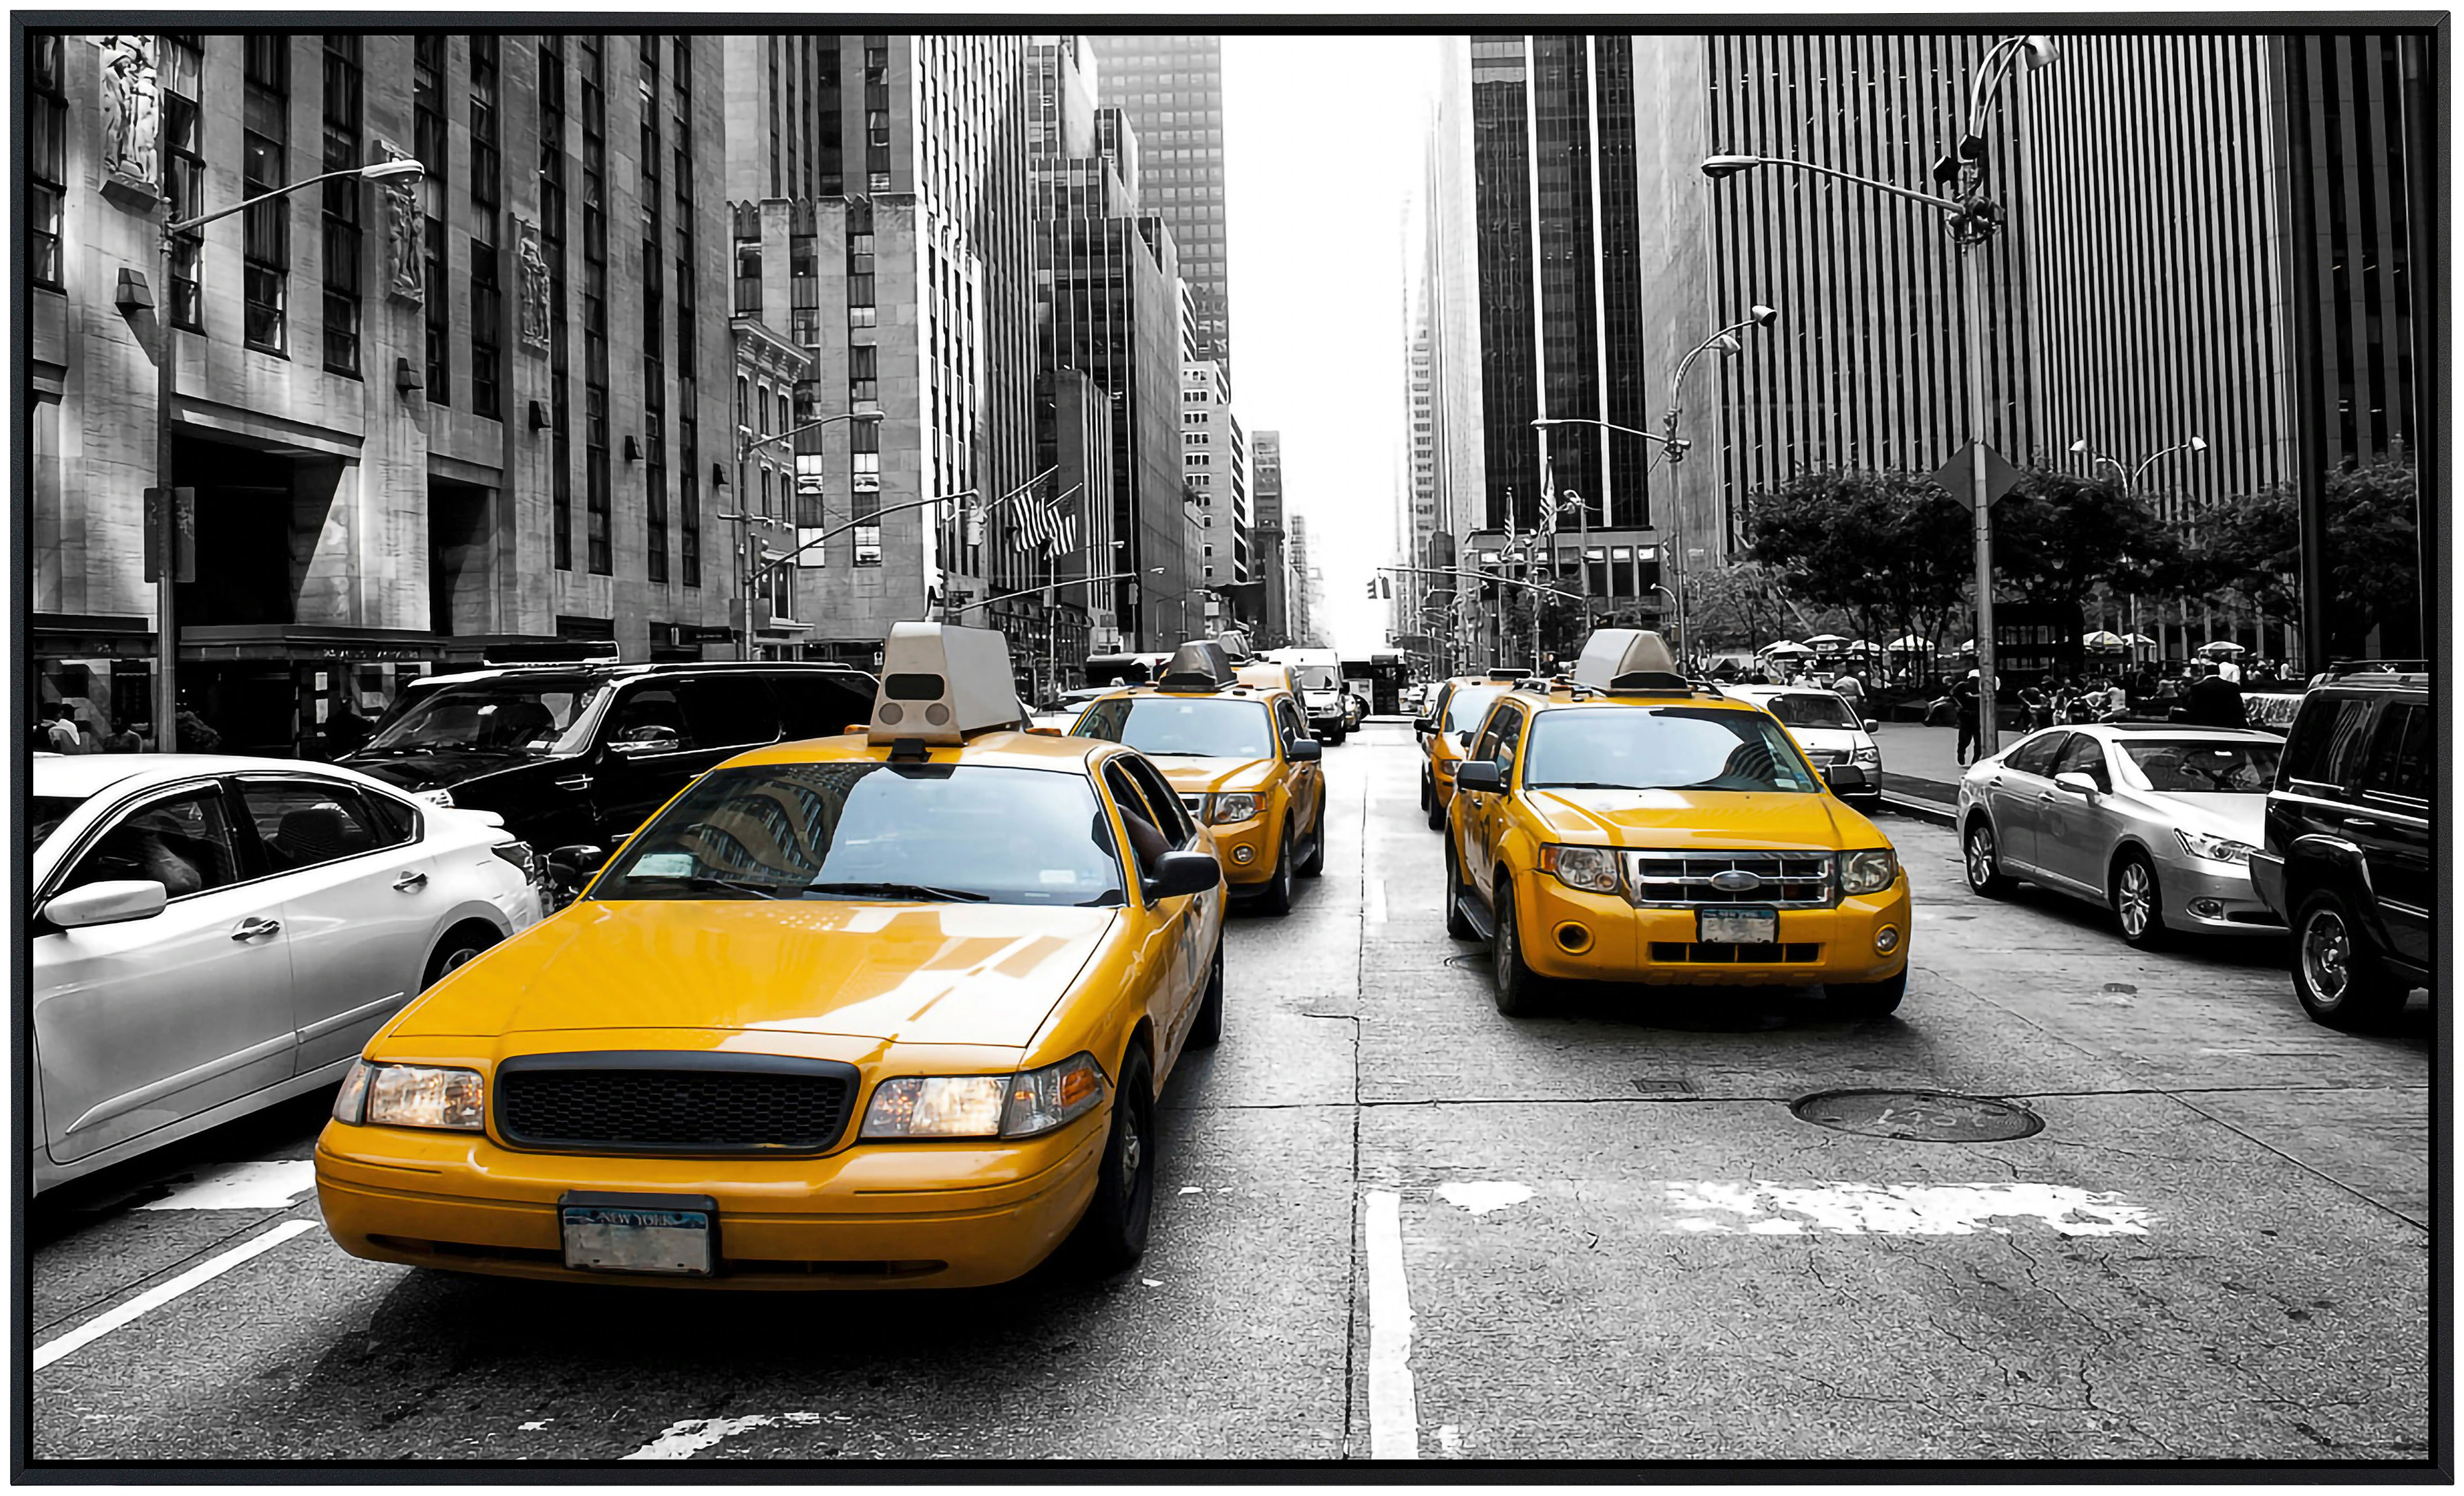 Papermoon Infrarotheizung »New York taxis Schwarz & Weiß«, sehr angenehme S günstig online kaufen